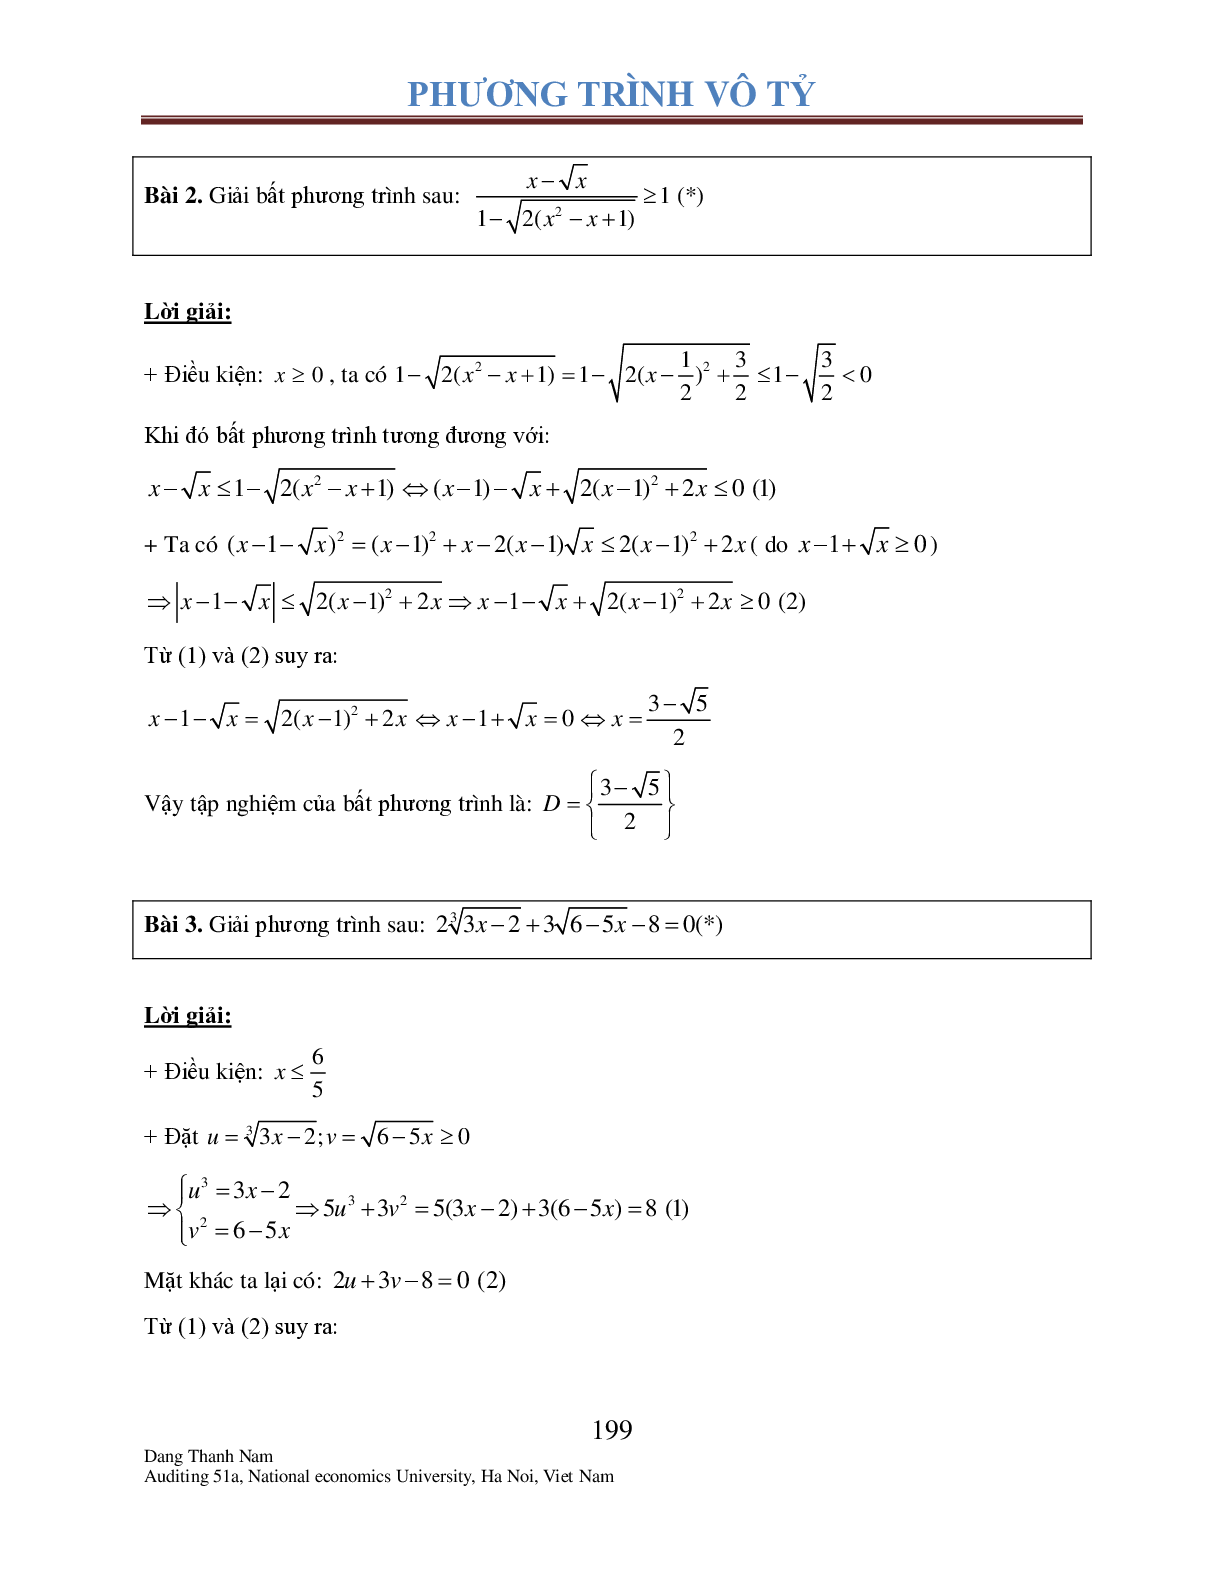 Chuyên đề phương trình Vô tỉ (trang 4)